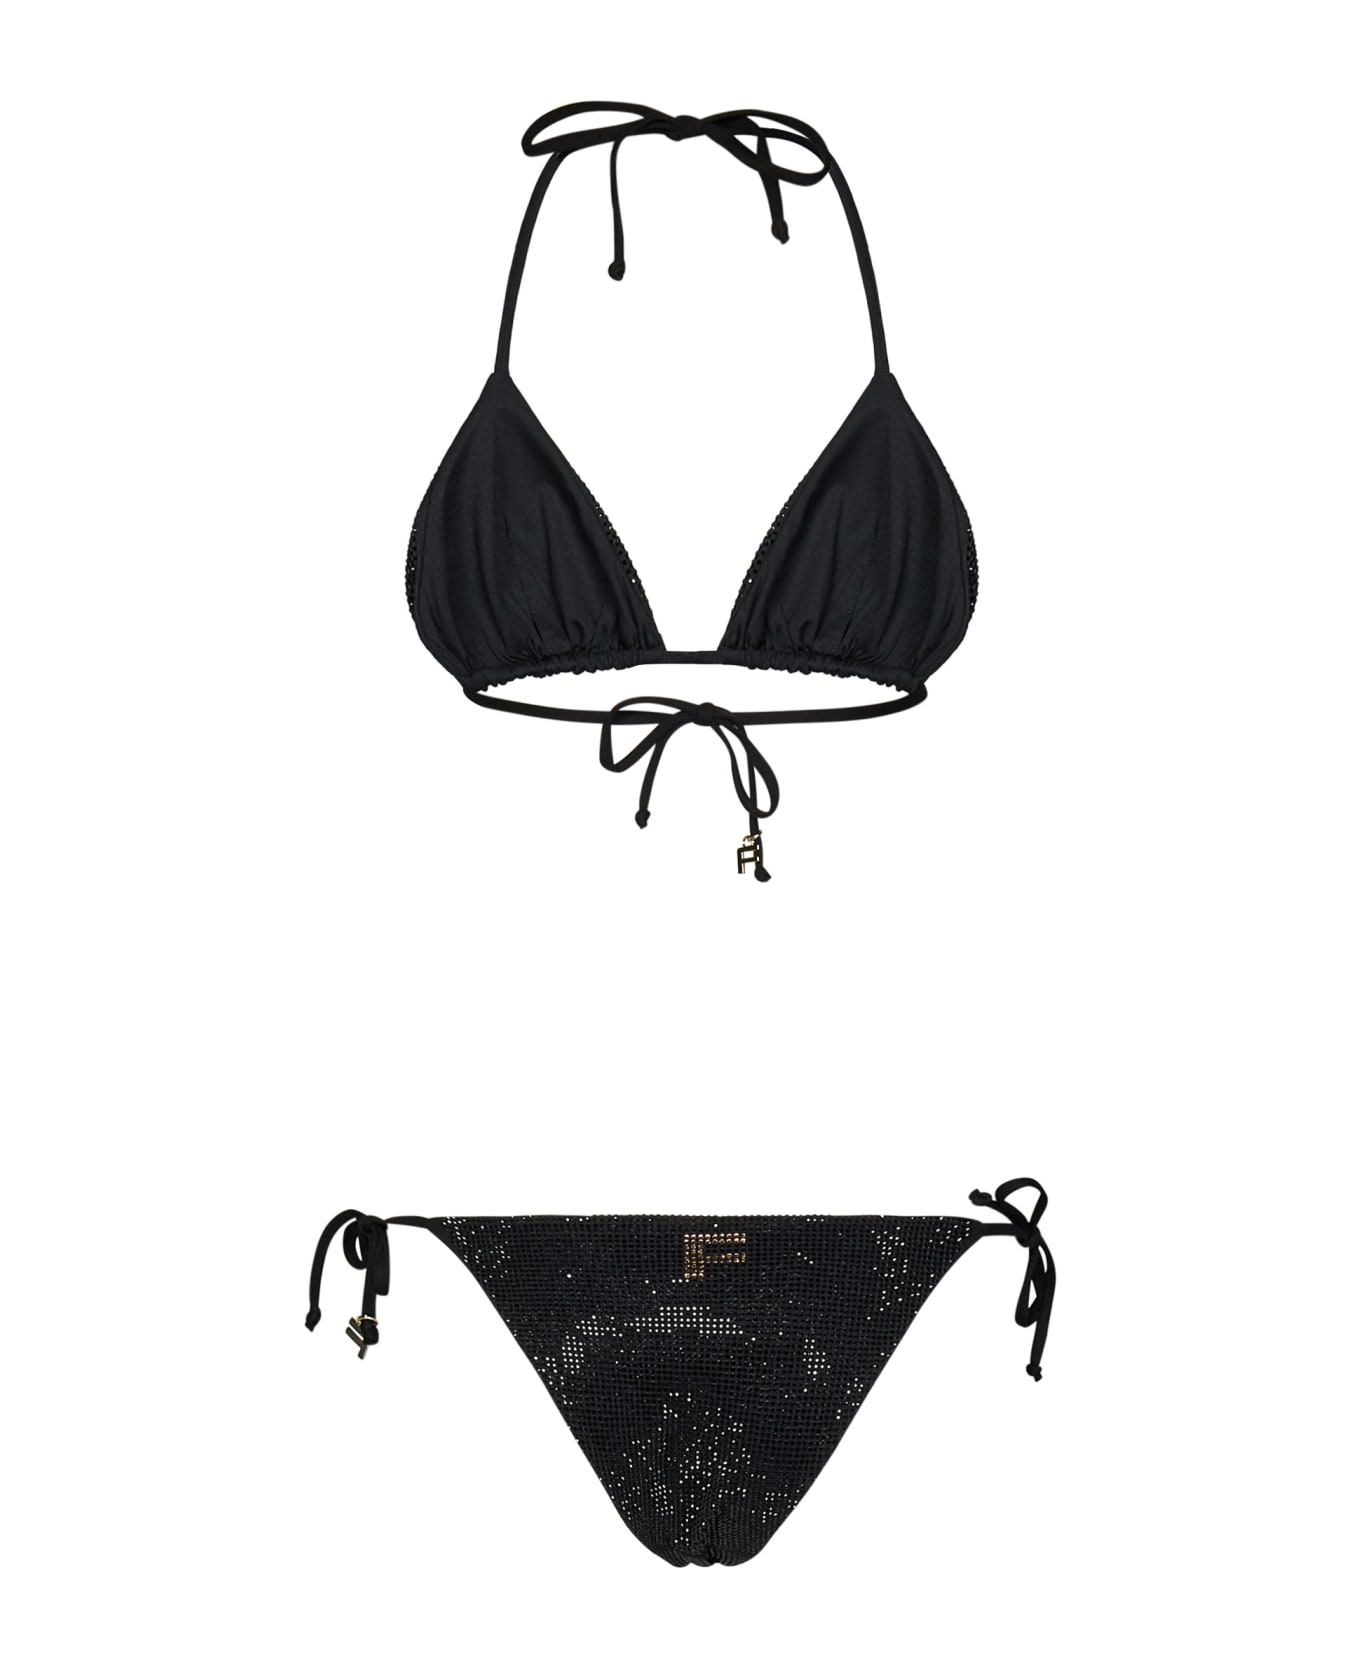 Fisico - Cristina Ferrari Fisico Bikini - Black 水着